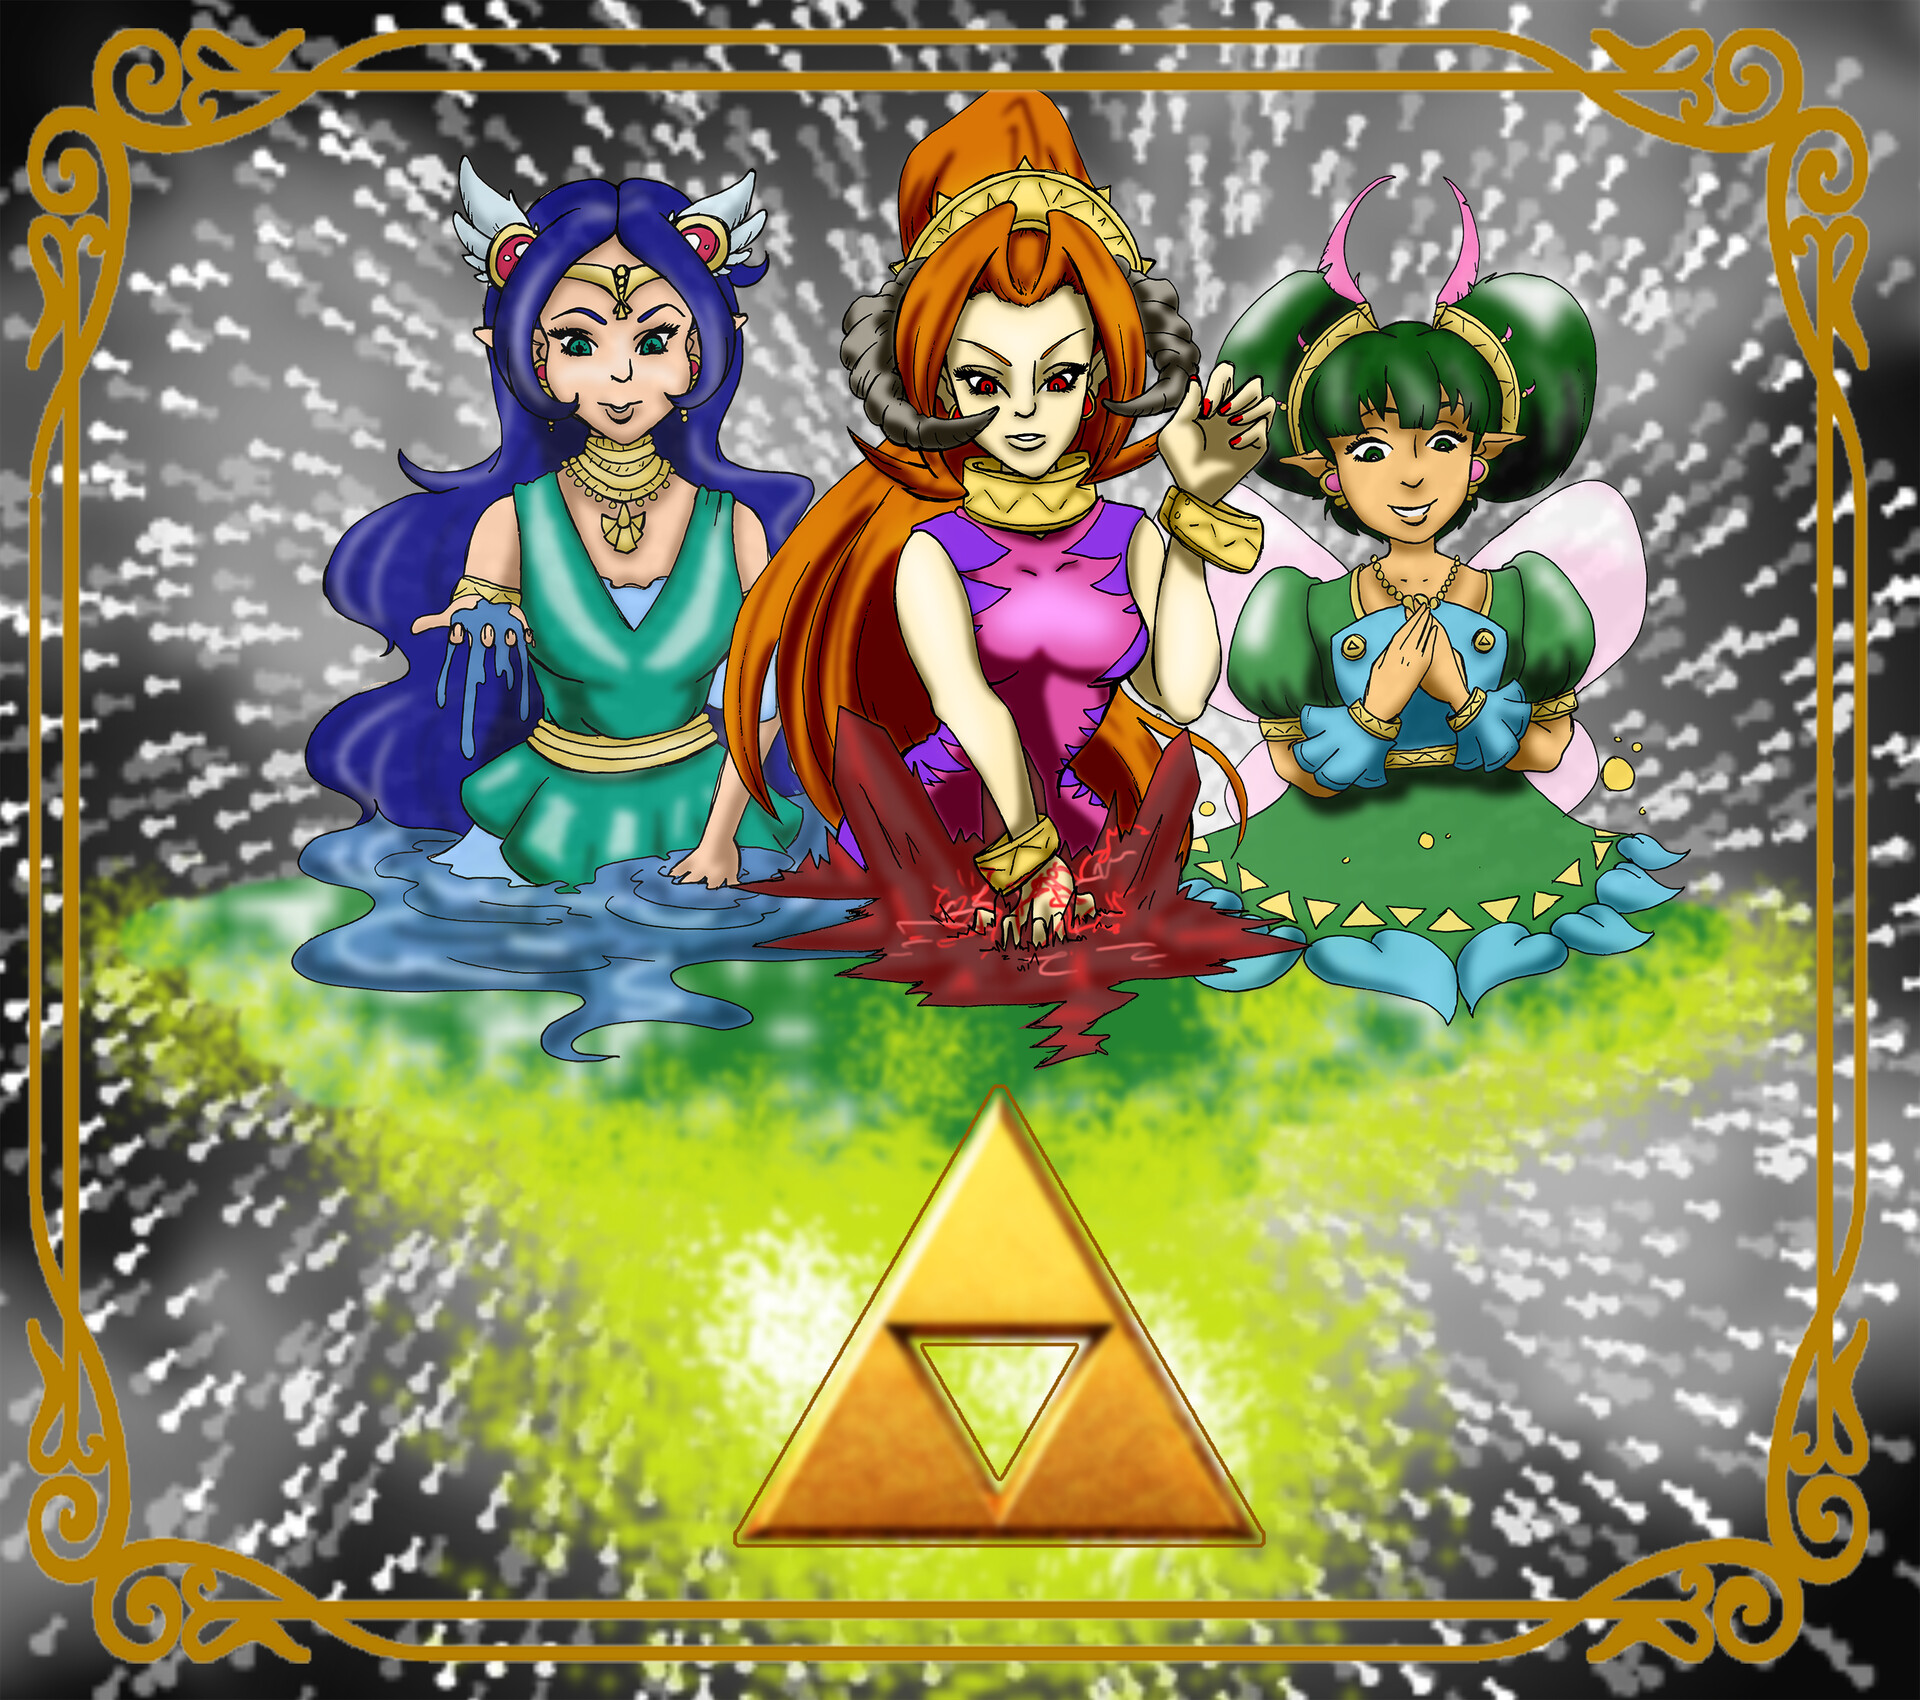 ArtStation - The Legend of Zelda: A Link Between Worlds